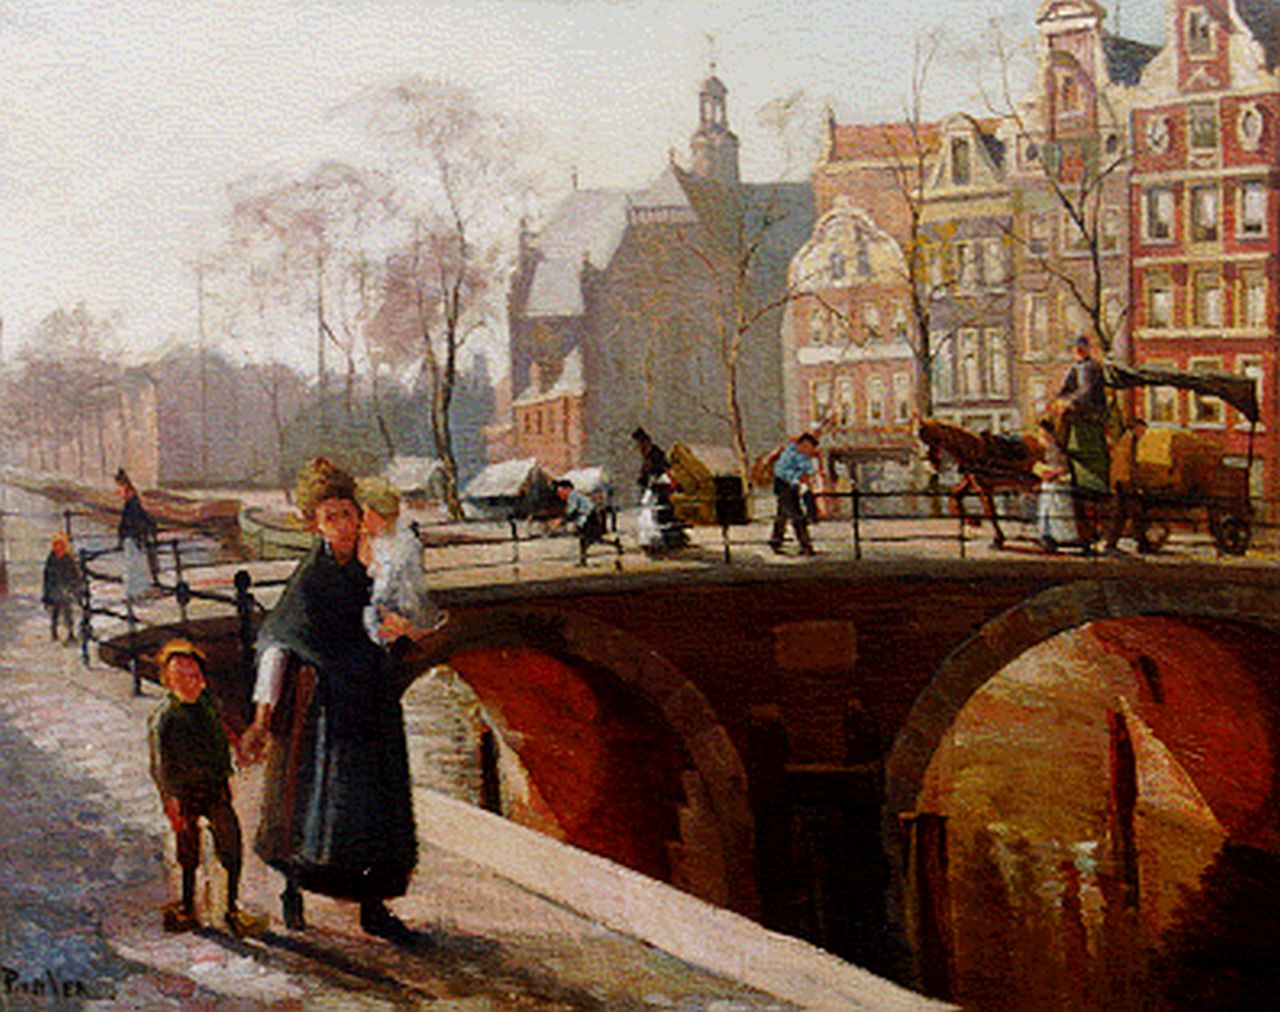 Ven P.J. van der | 'Paul' Jan van der Ven, Prinsengracht met de Noorderkerk Amsterdam, olieverf op doek 68,5 x 86,5 cm, gesigneerd linksonder